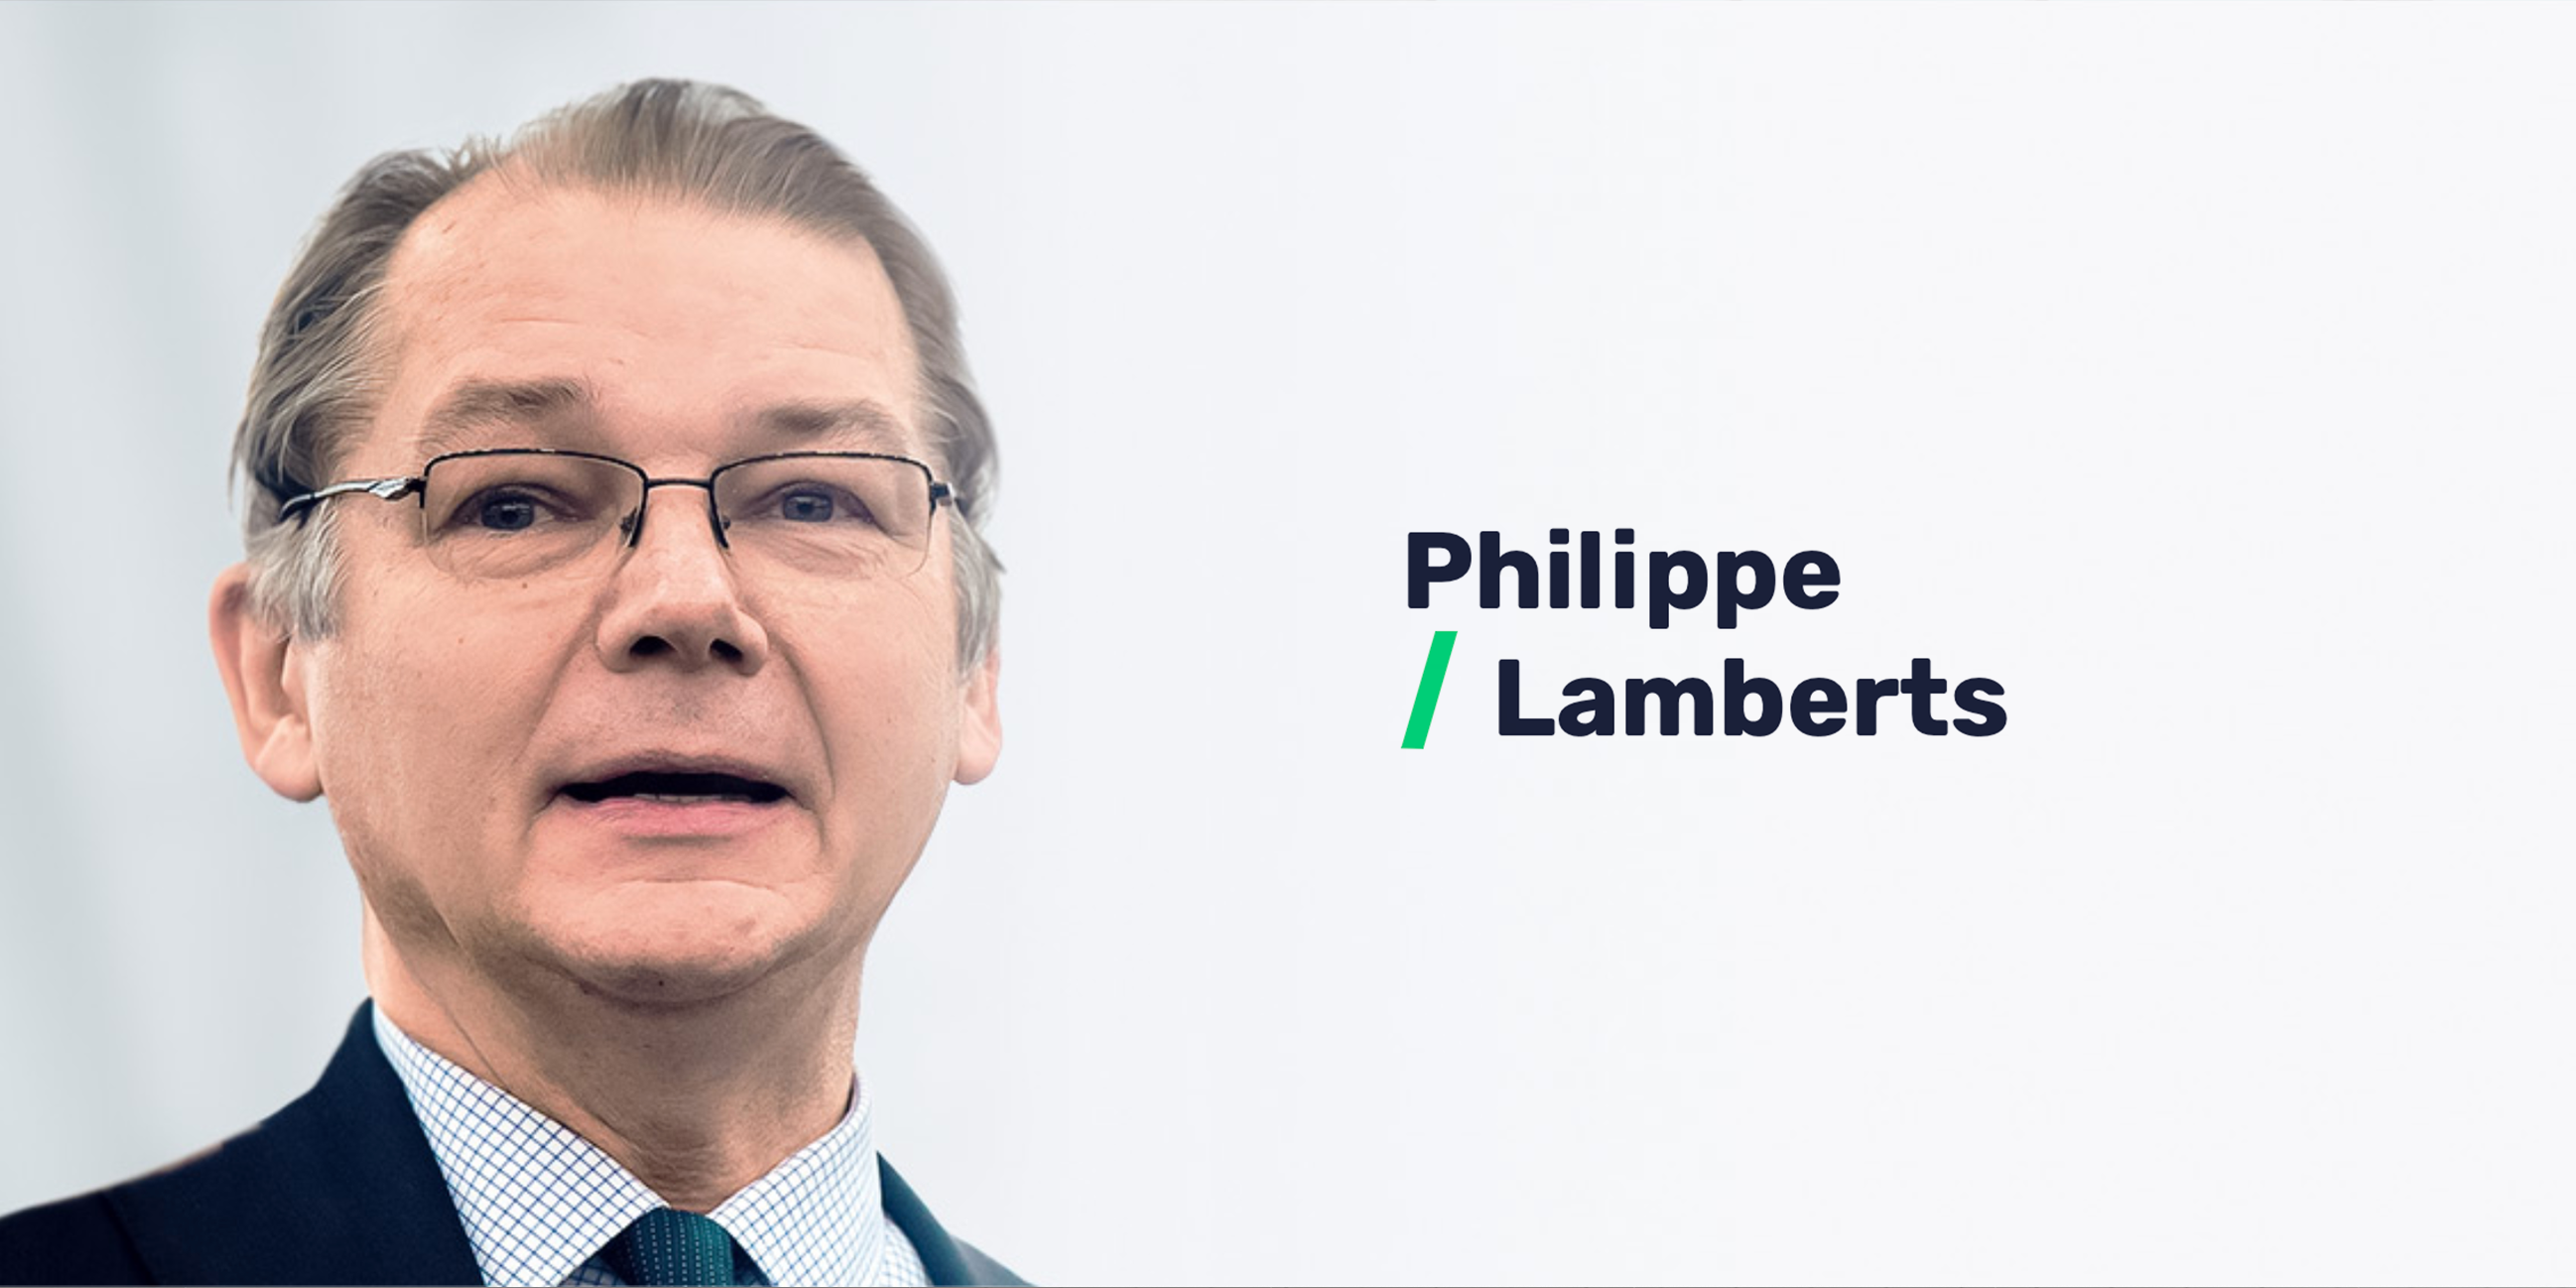 Philippe Lamberts